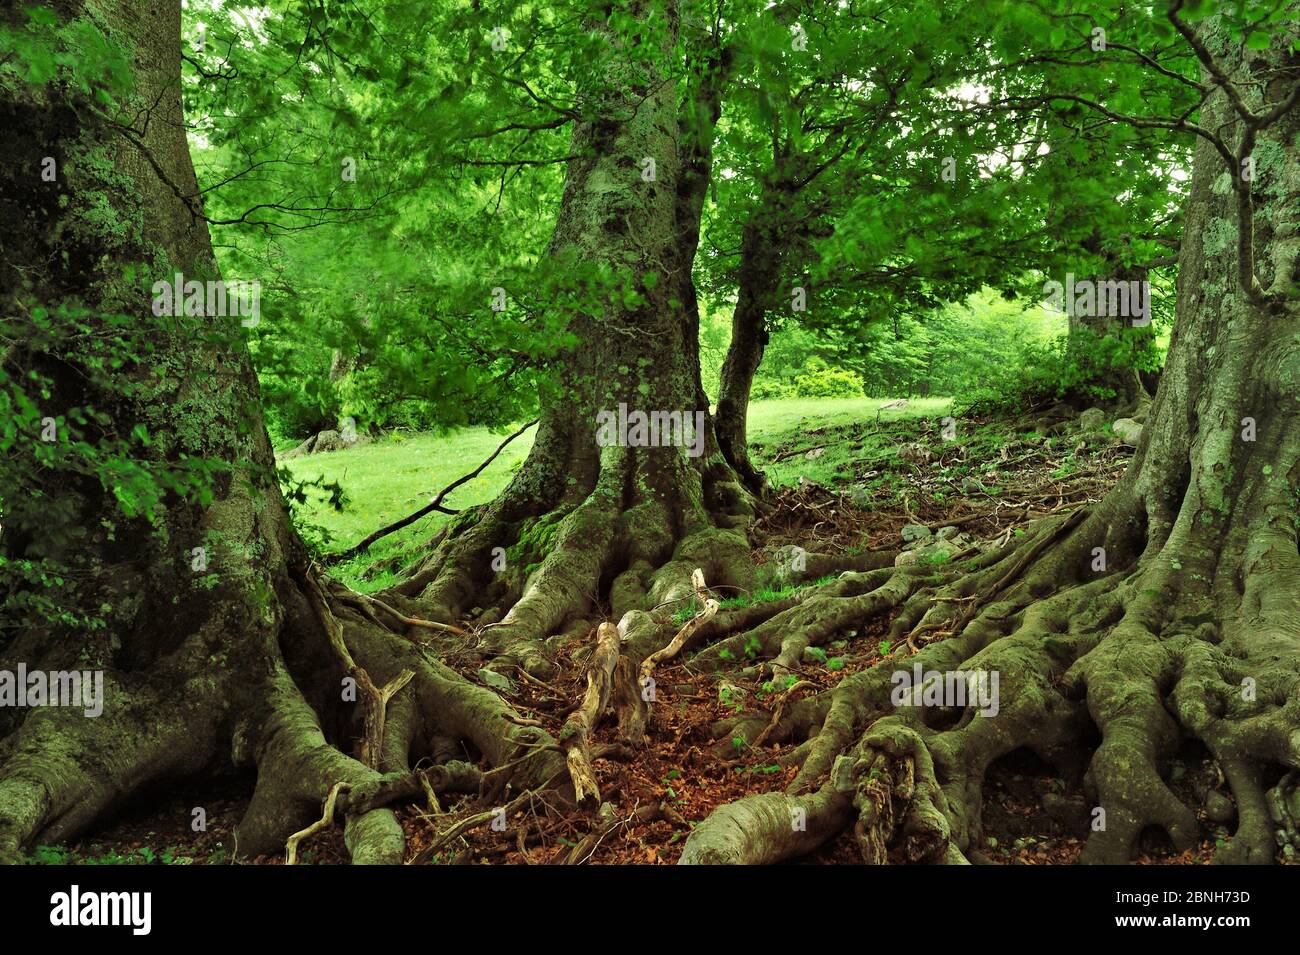 European beech (Fagus sylvatica) forest, Pollino National Park, Italy. June 2009. Stock Photo